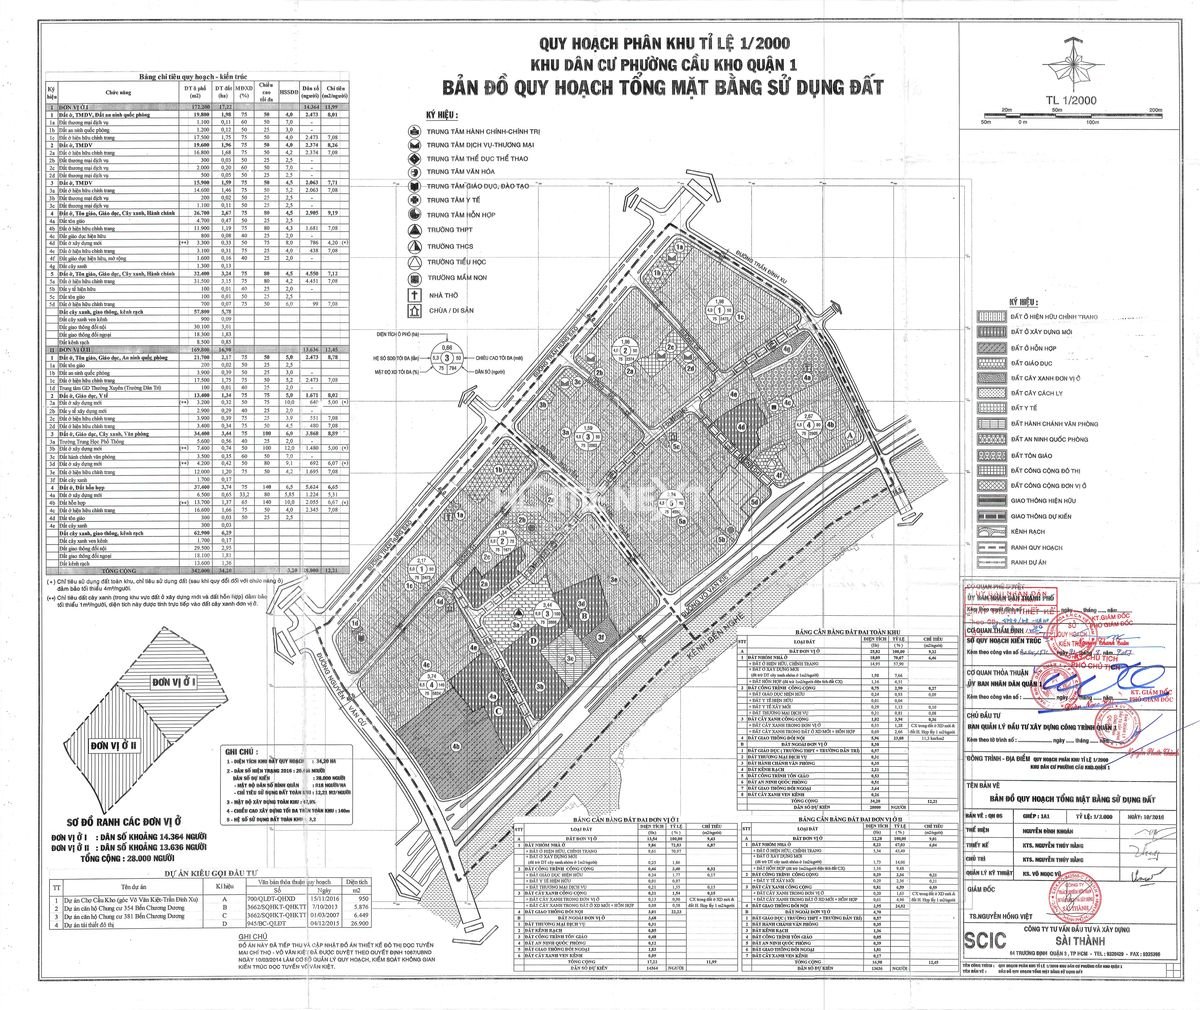 Bản đồ quy hoạch sử dụng đất 1/2000 phường Cầu Kho quận 1